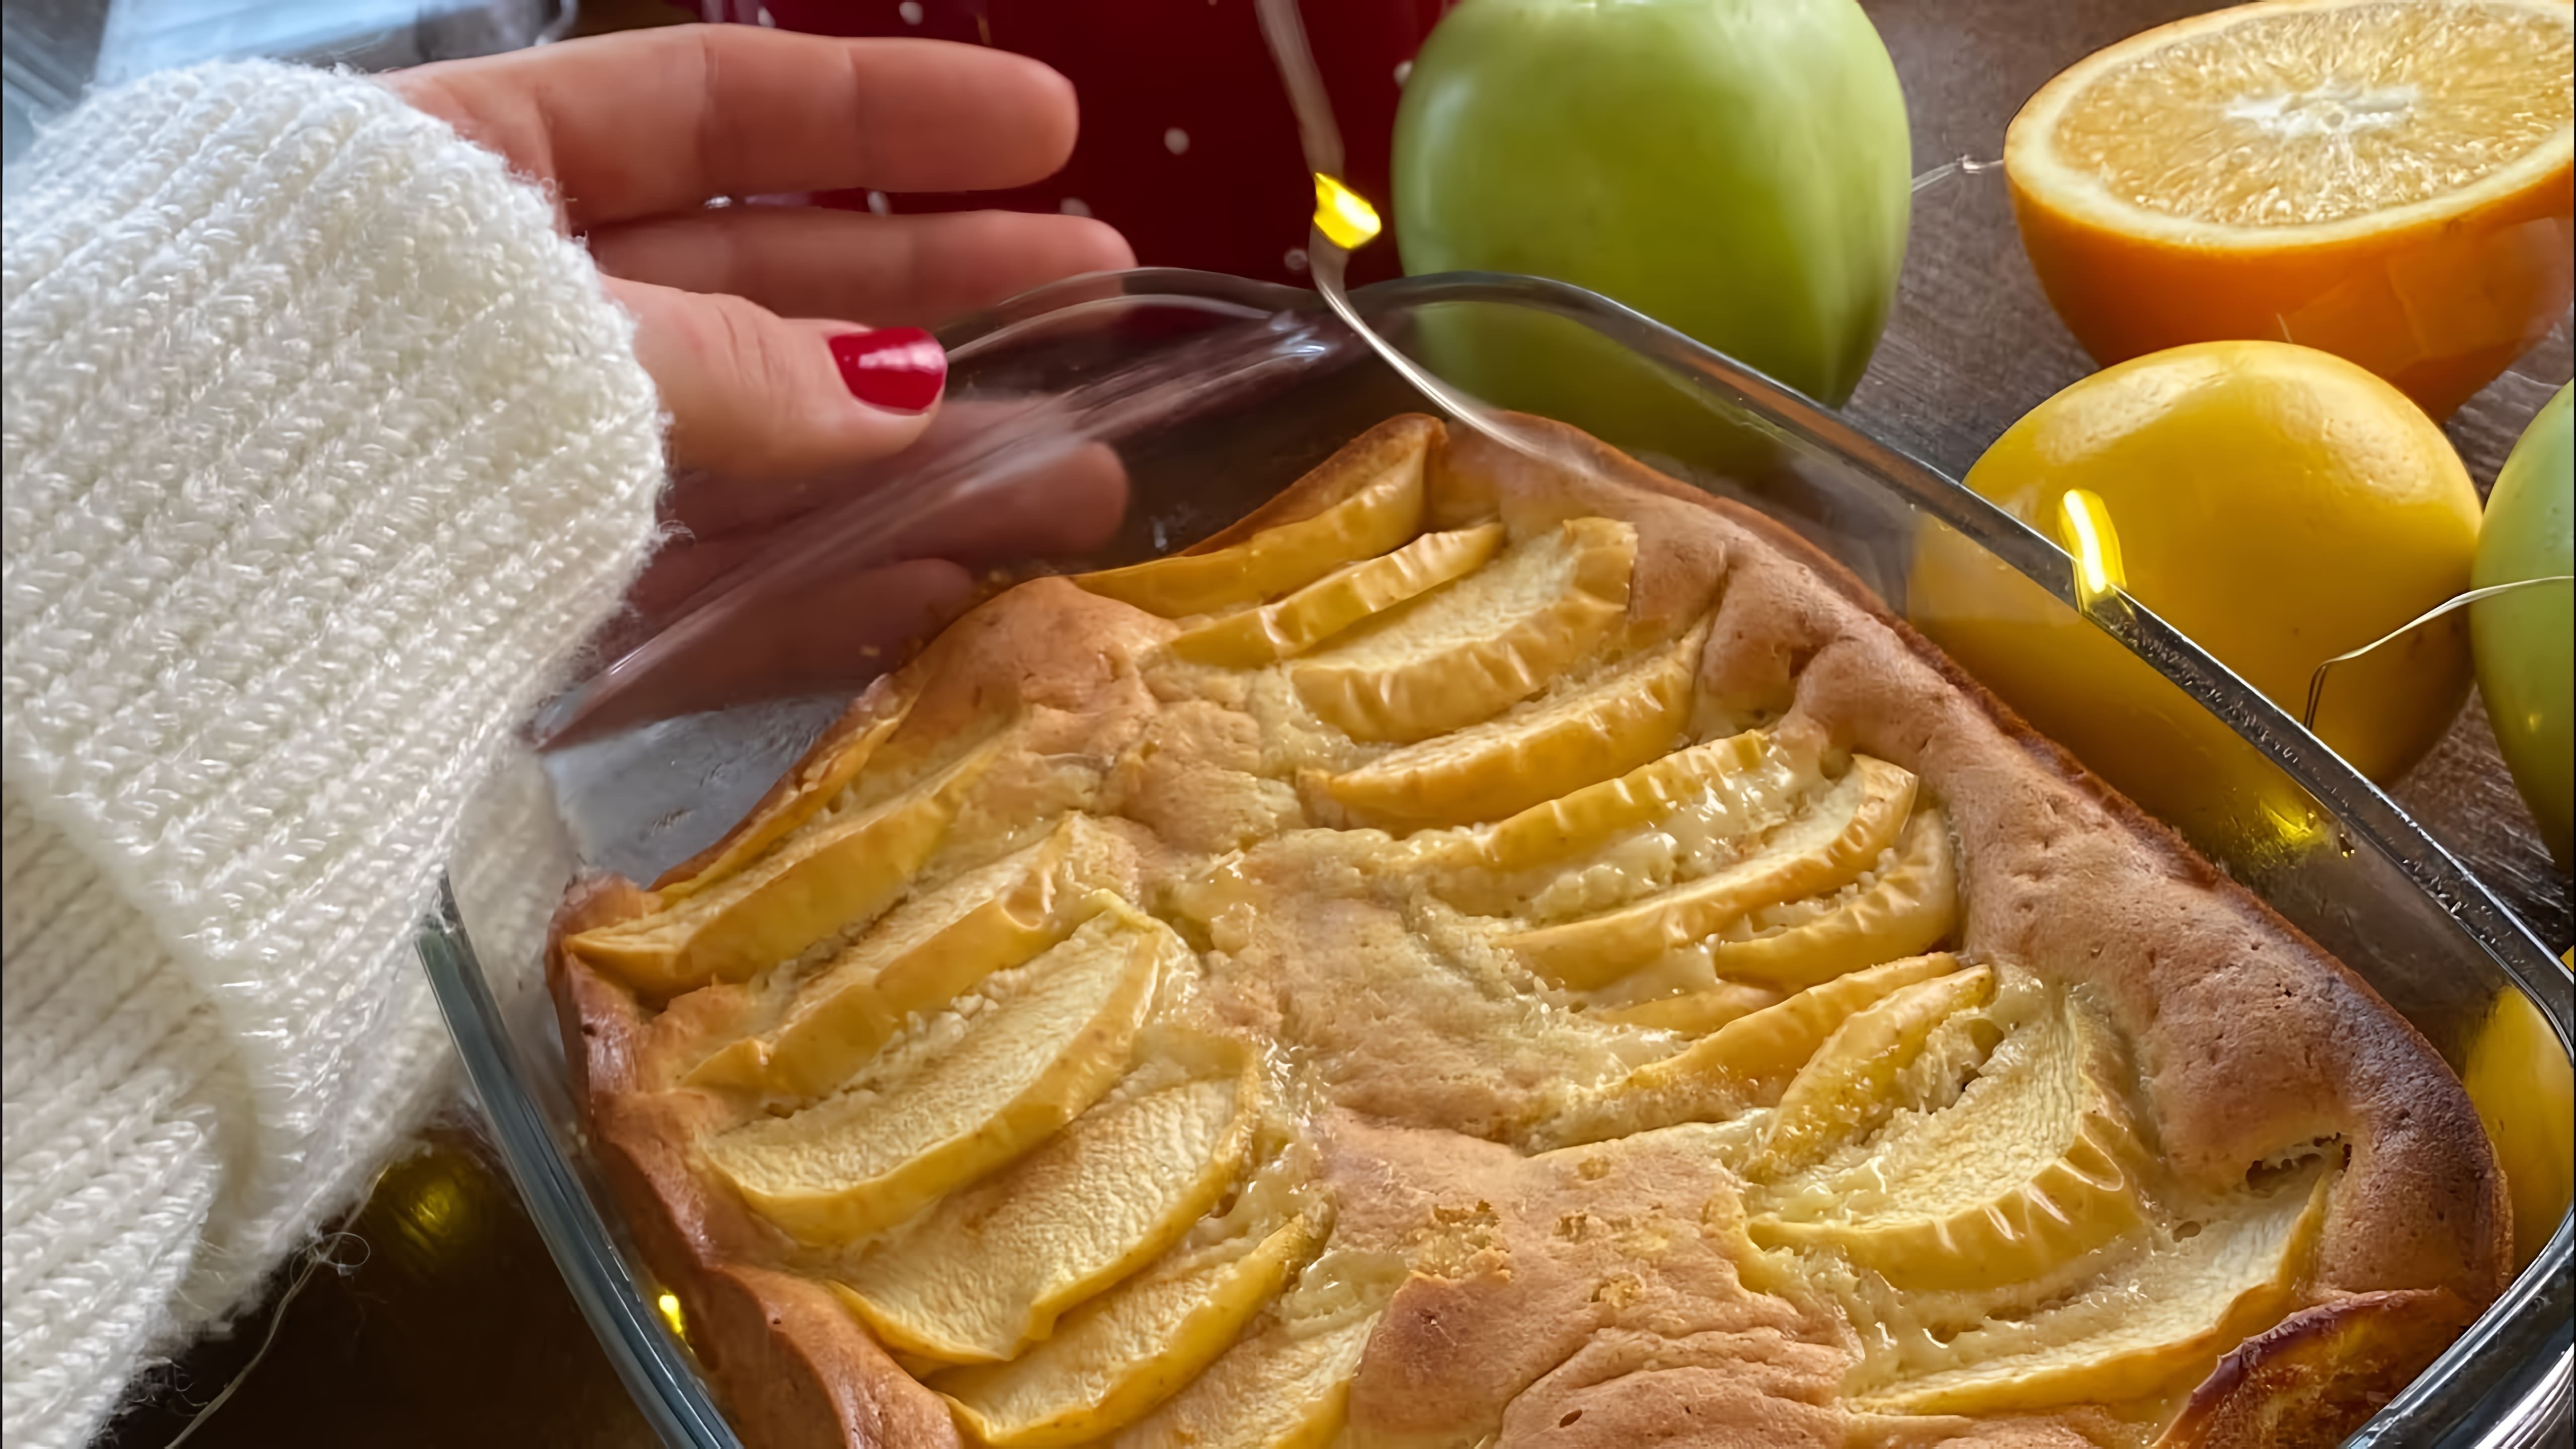 ЯБЛОЧНЫЙ ПИРОГ БЫСТРО! НА КУКУРУЗНОЙ МУКЕ

В этом видео-ролике я покажу, как приготовить вкусный яблочный пирог на кукурузной муке